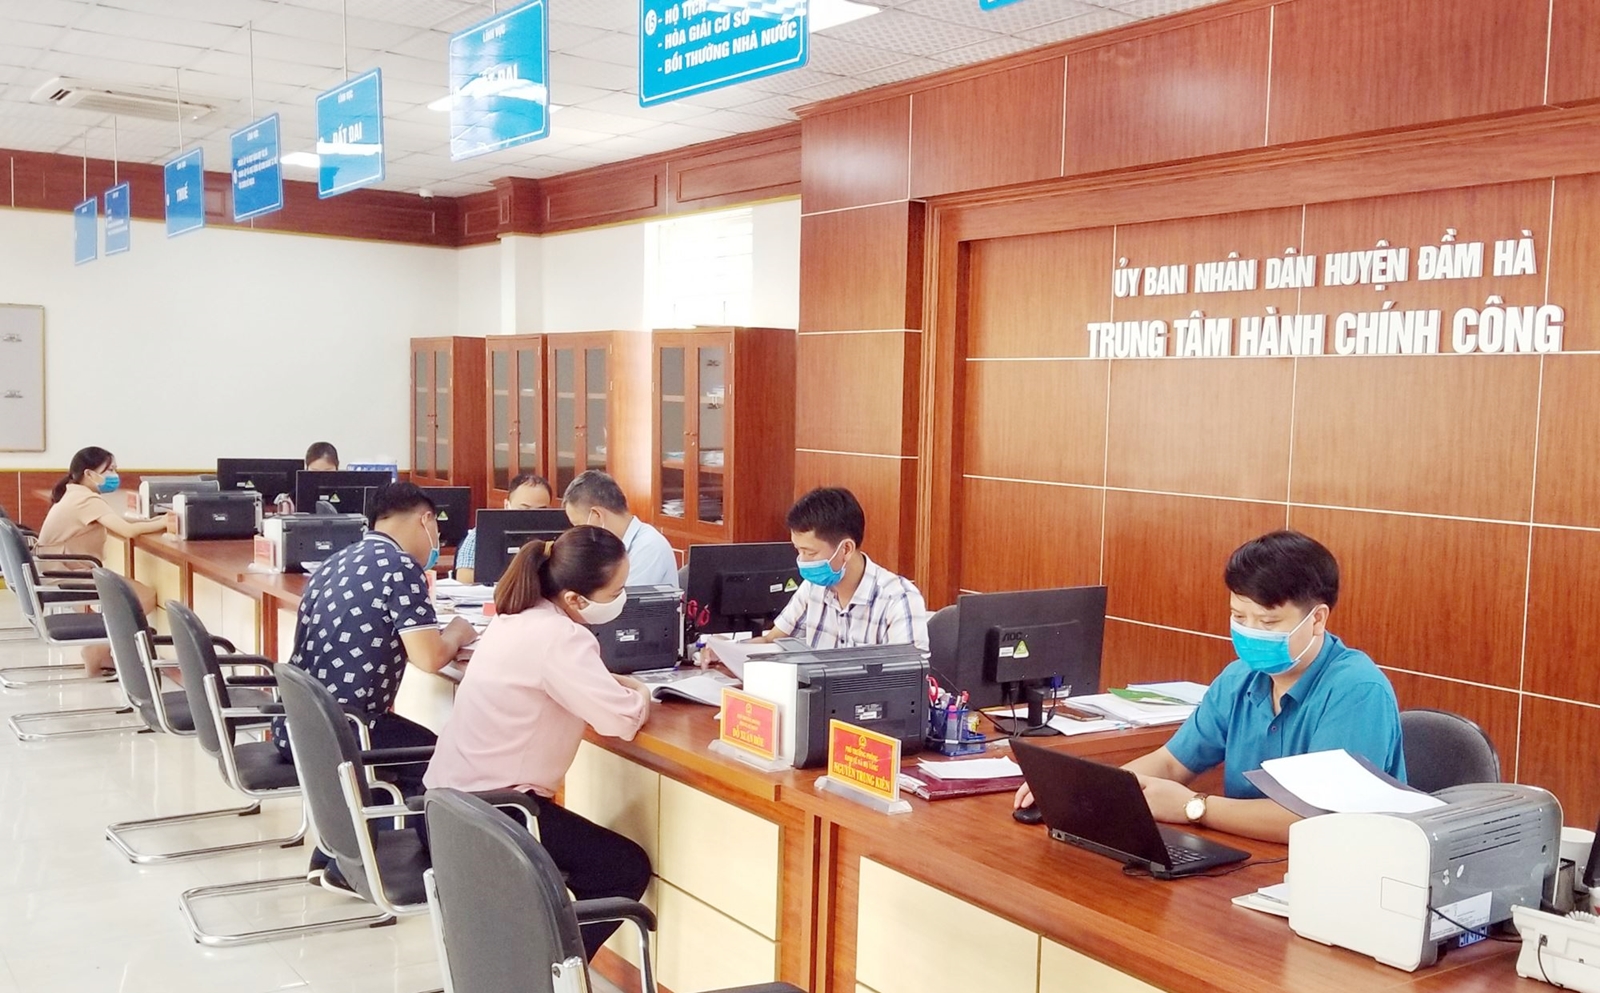 Cán bộ Trung tâm Hành chính công huyện Đầm Hà tận tình hướng dẫn nhân dân giải quyết các TTHC.